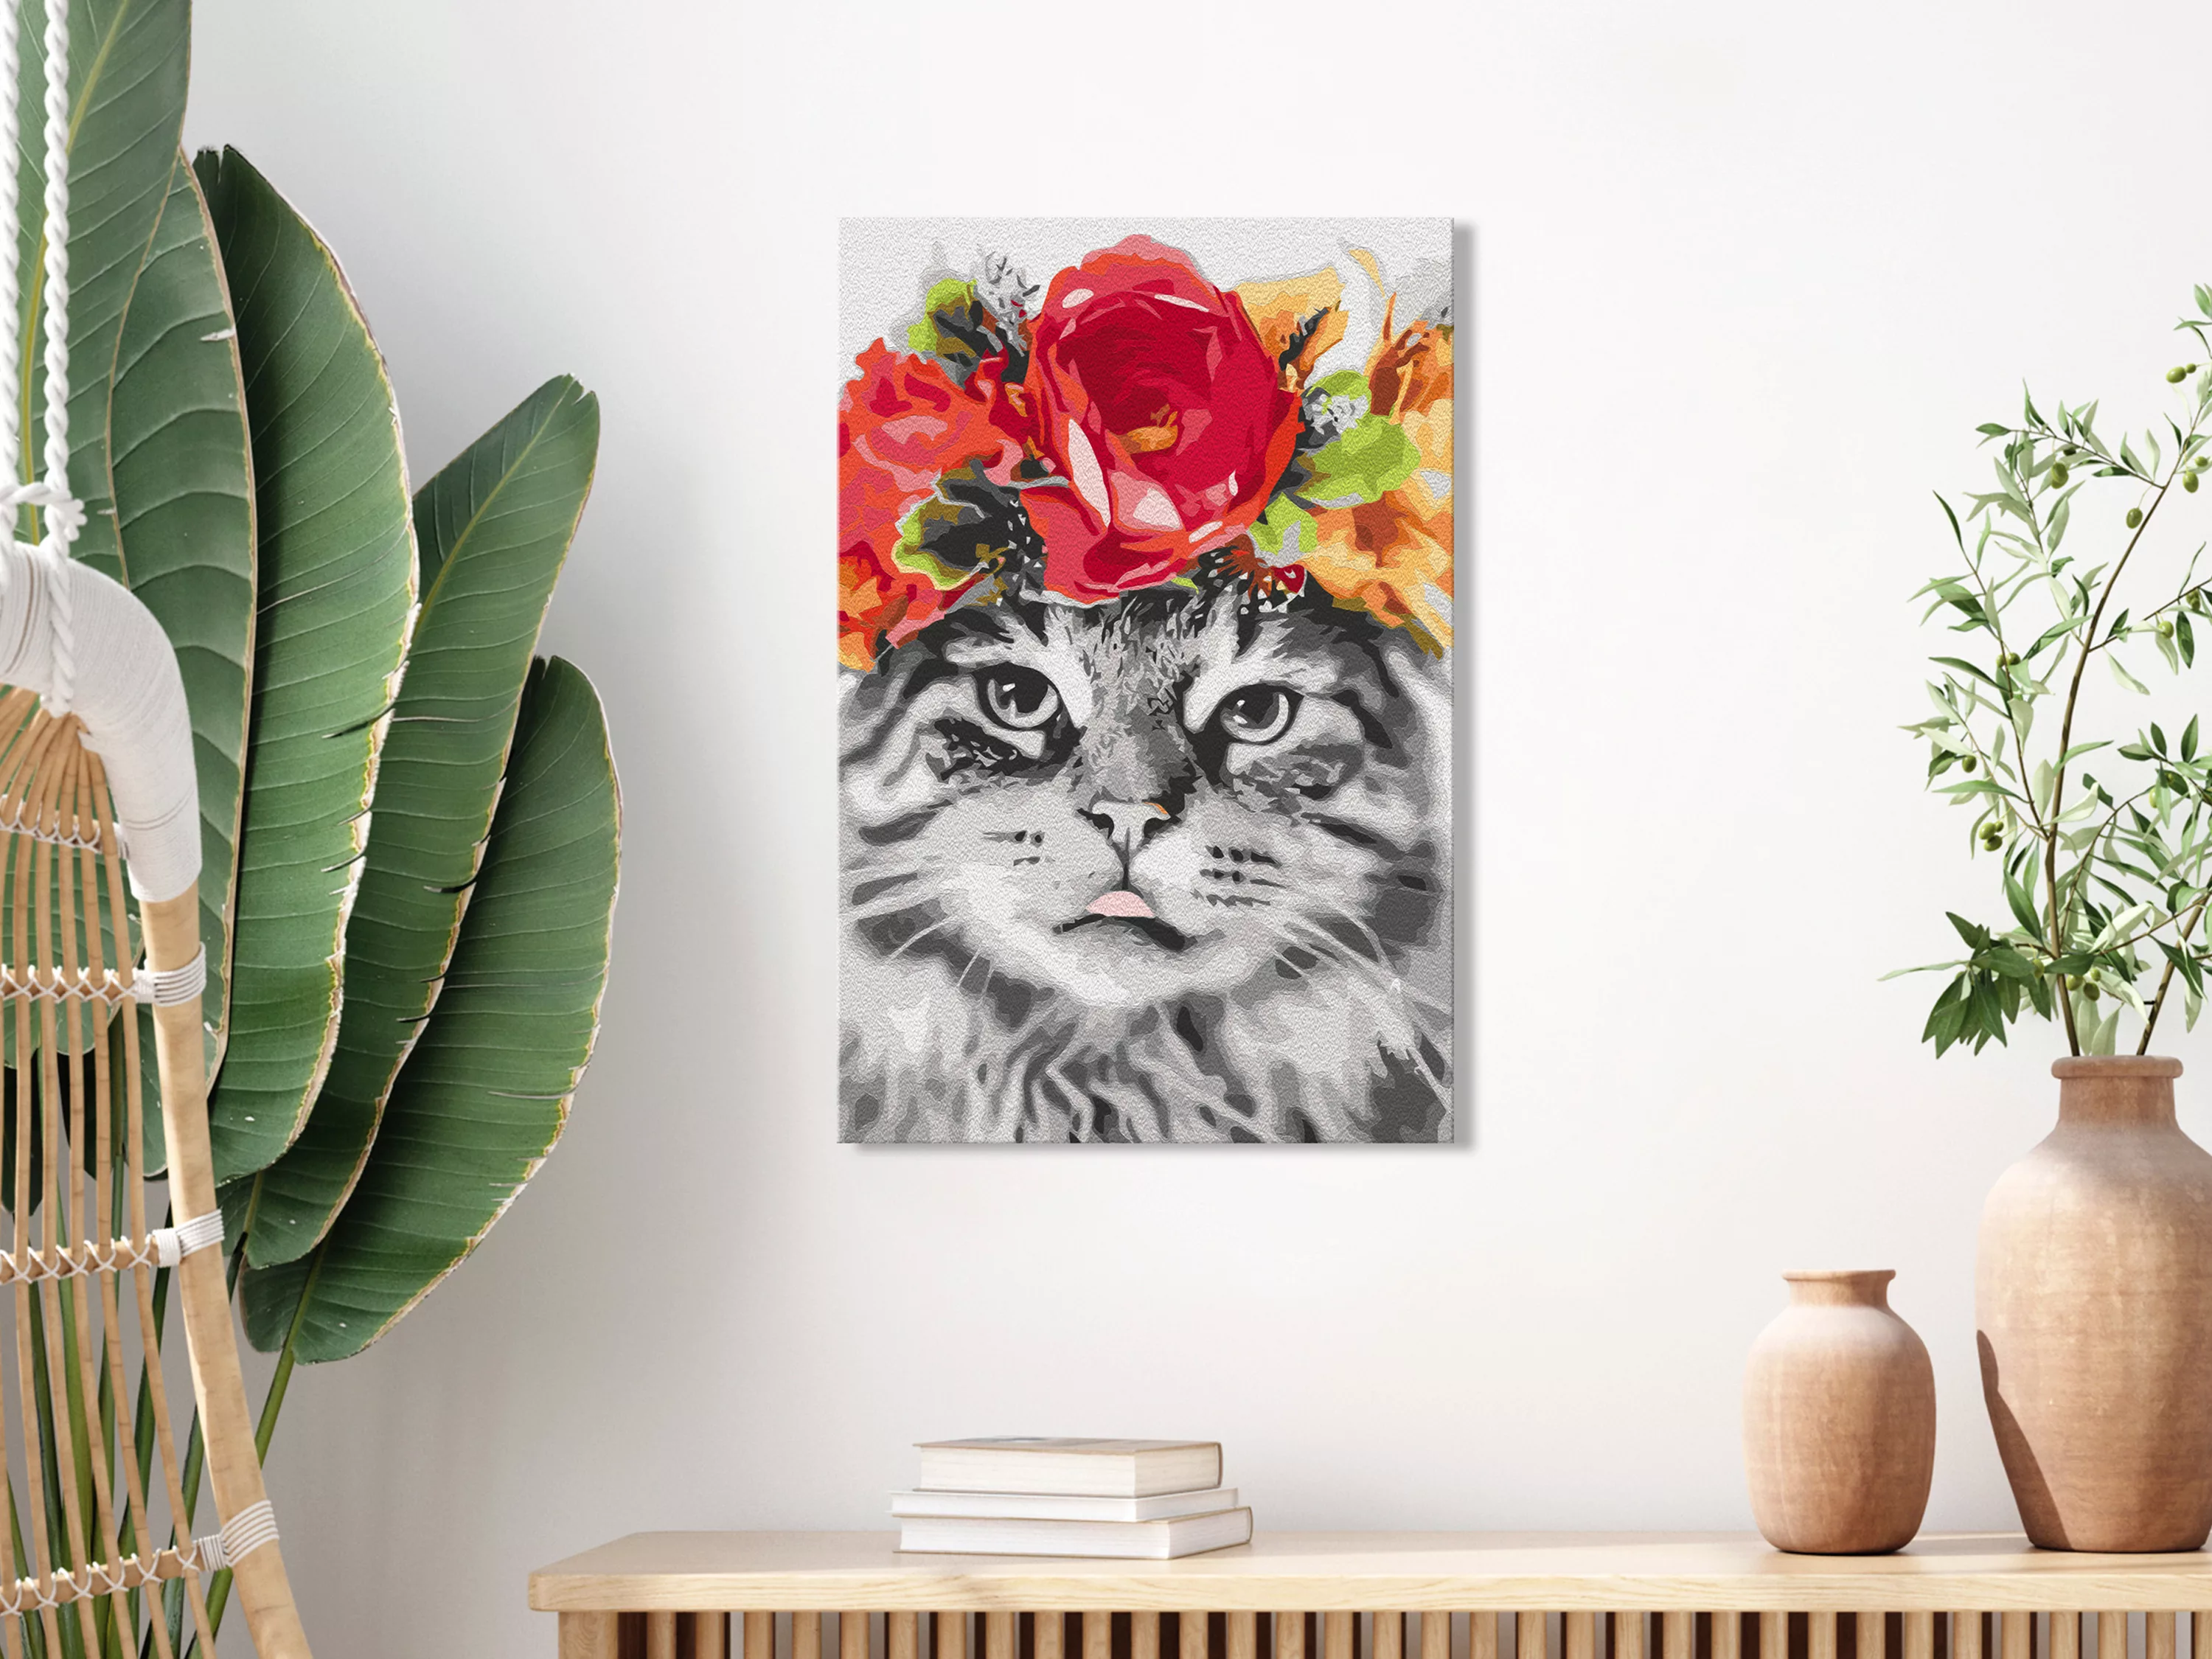 Malen Nach Zahlen - Cat With Flowers günstig online kaufen